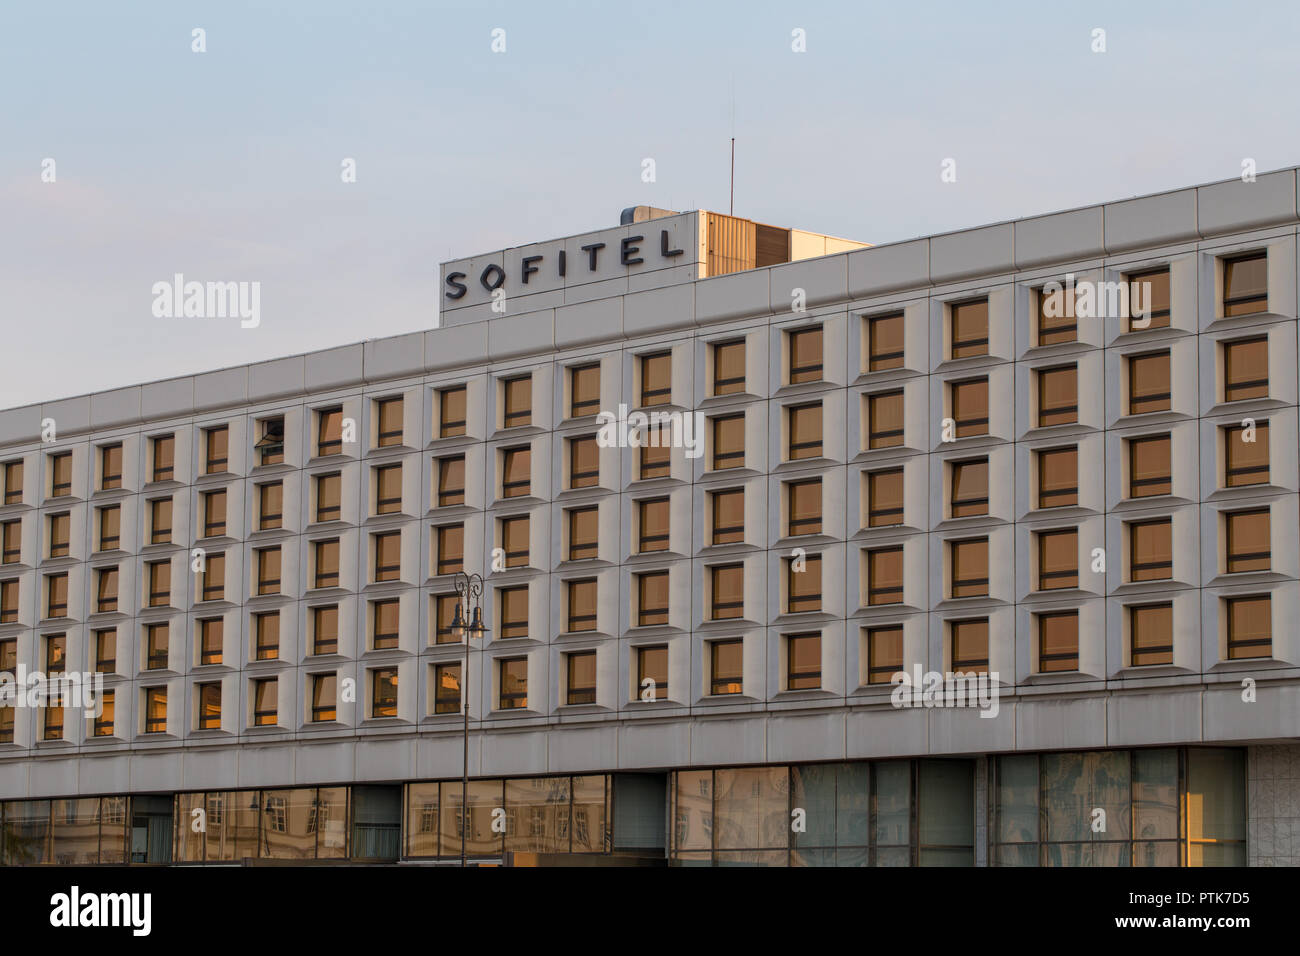 Sofitel Victoria Warszawa Hotel in Warsaw, Poland Stock Photo - Alamy